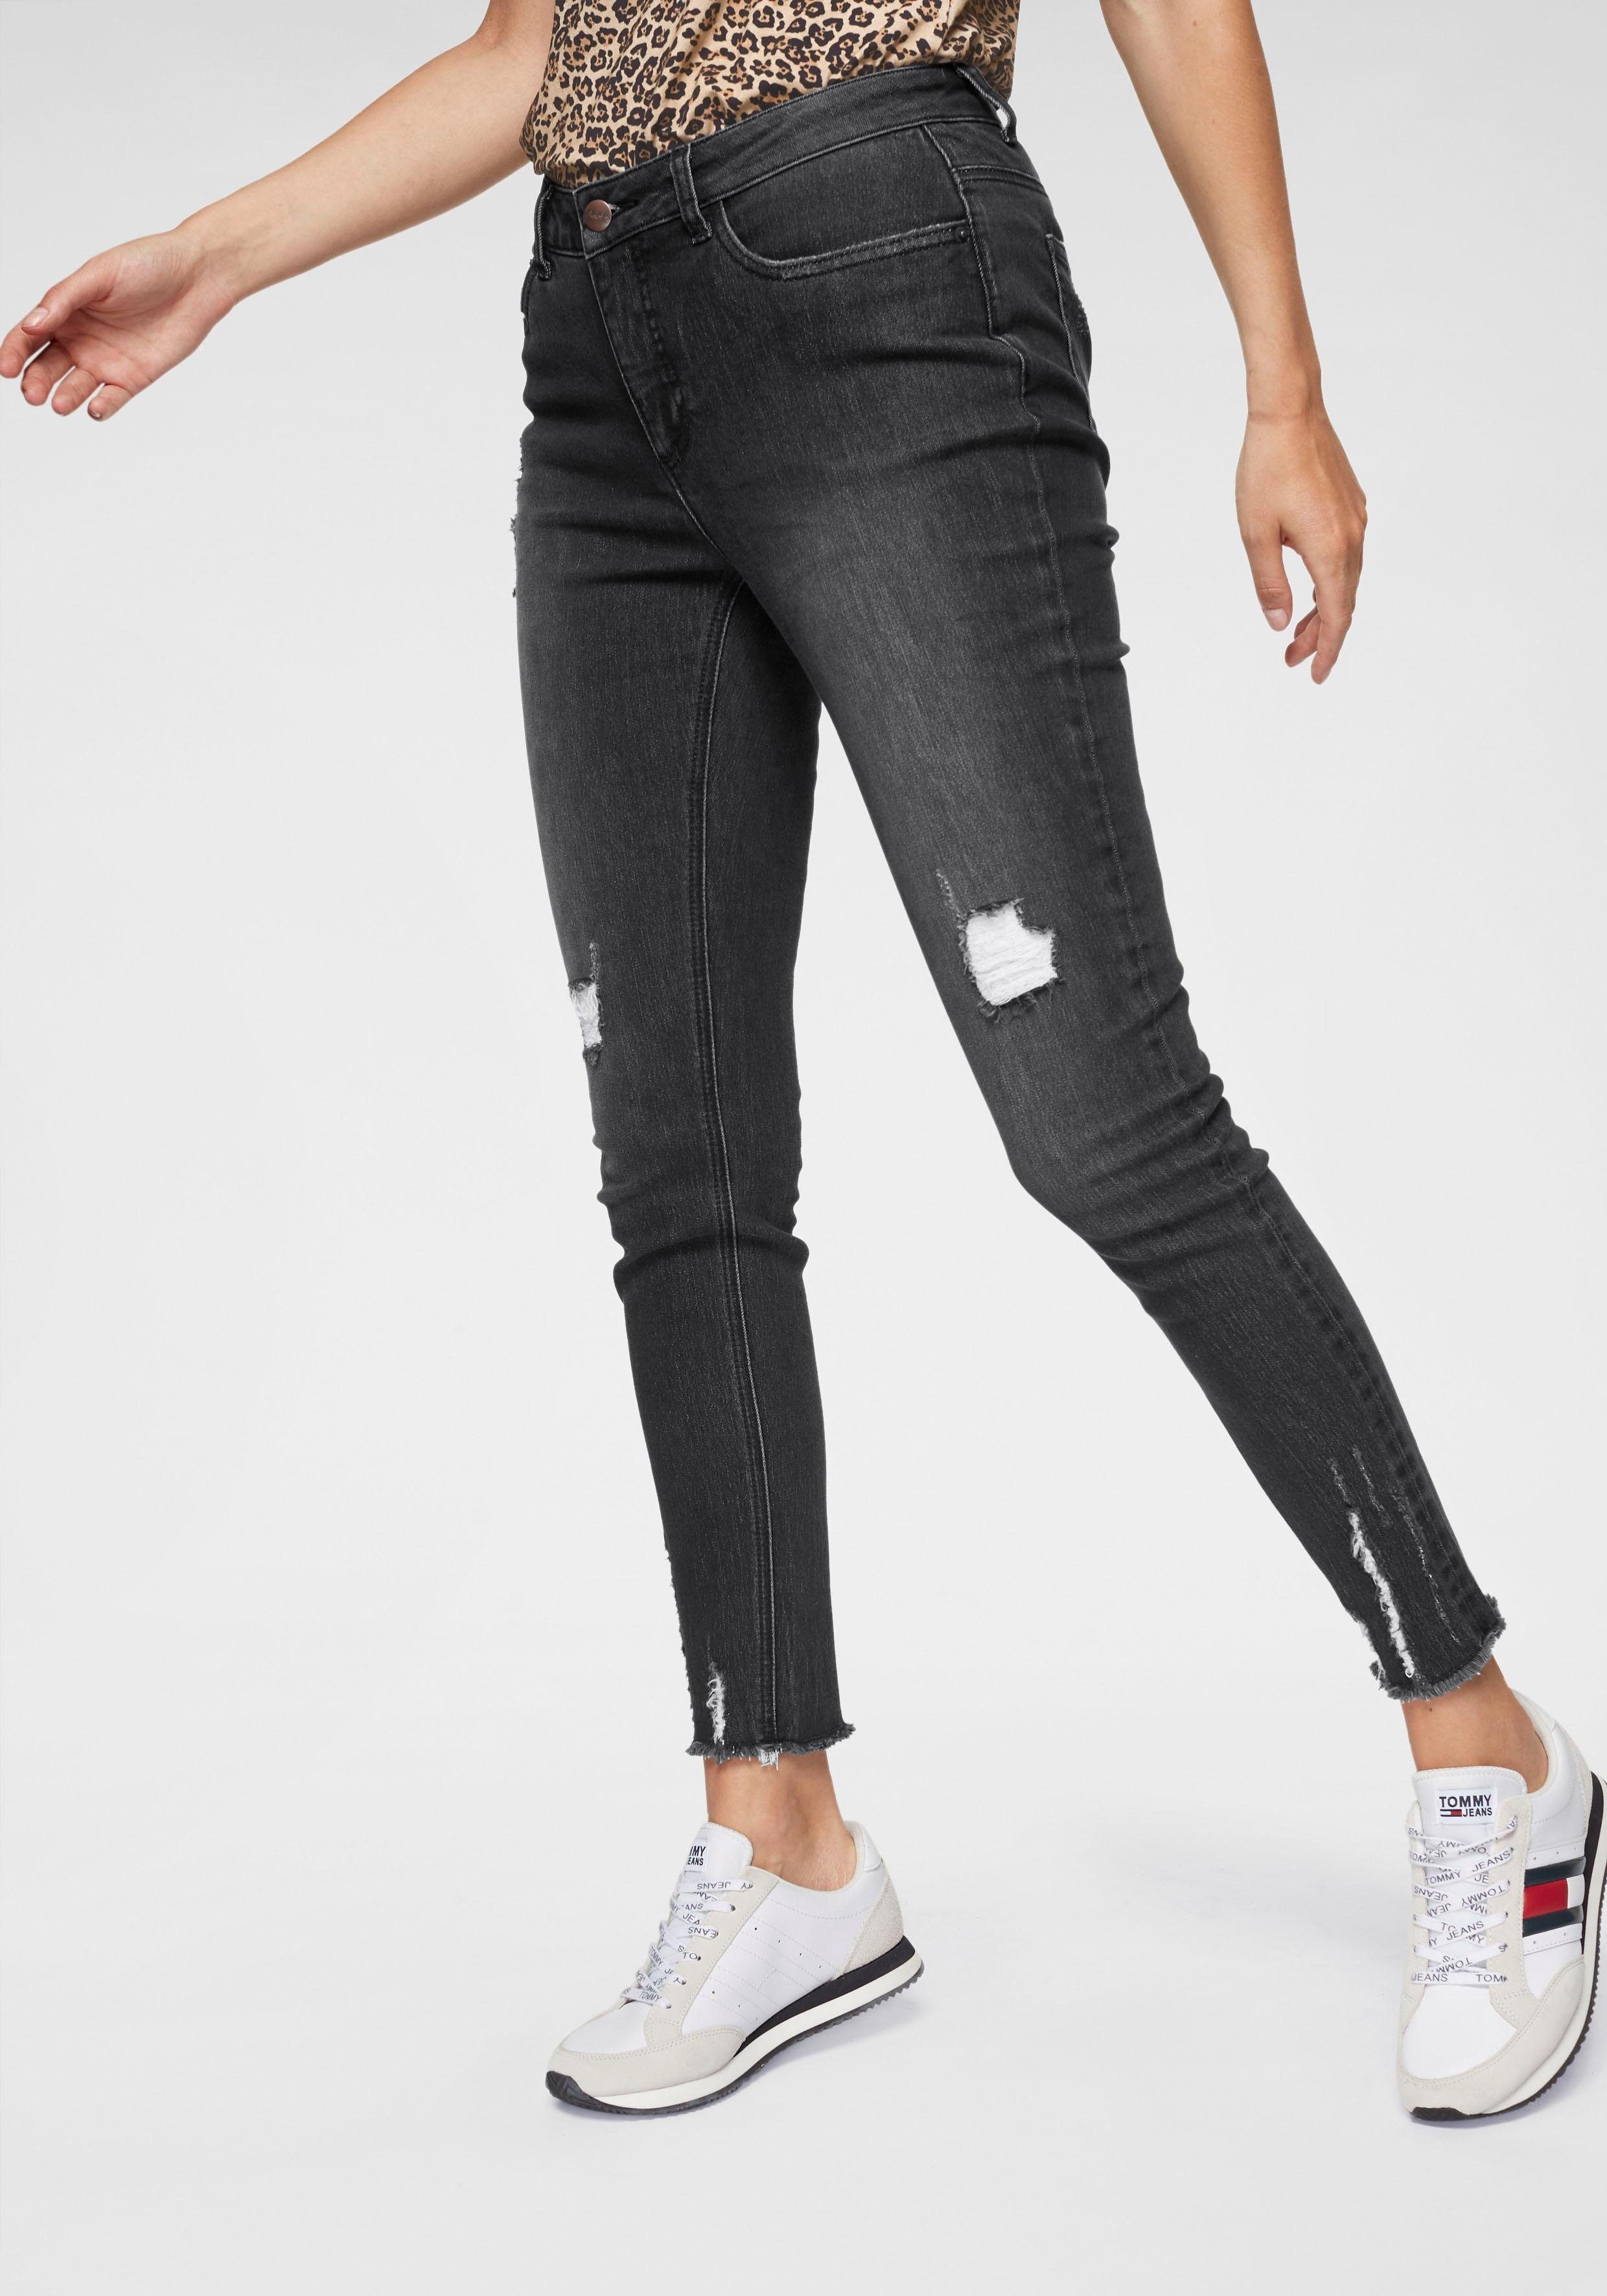 Destroyed Jeans in schwarz online kaufen » Ripped Jeans | OTTO